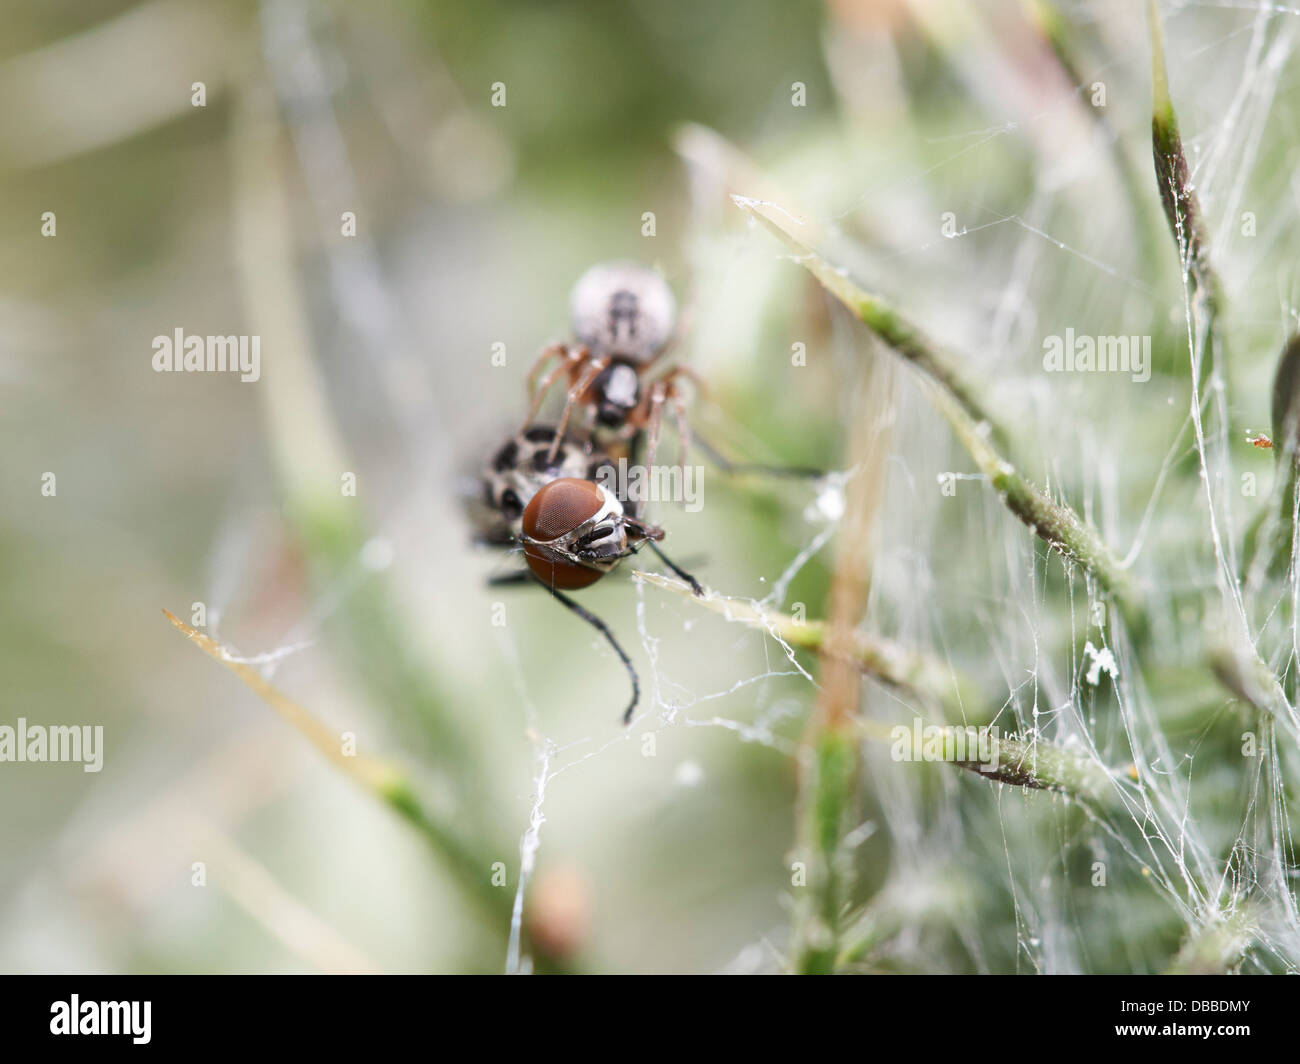 Fly catturati nella tela di ragno Foto Stock